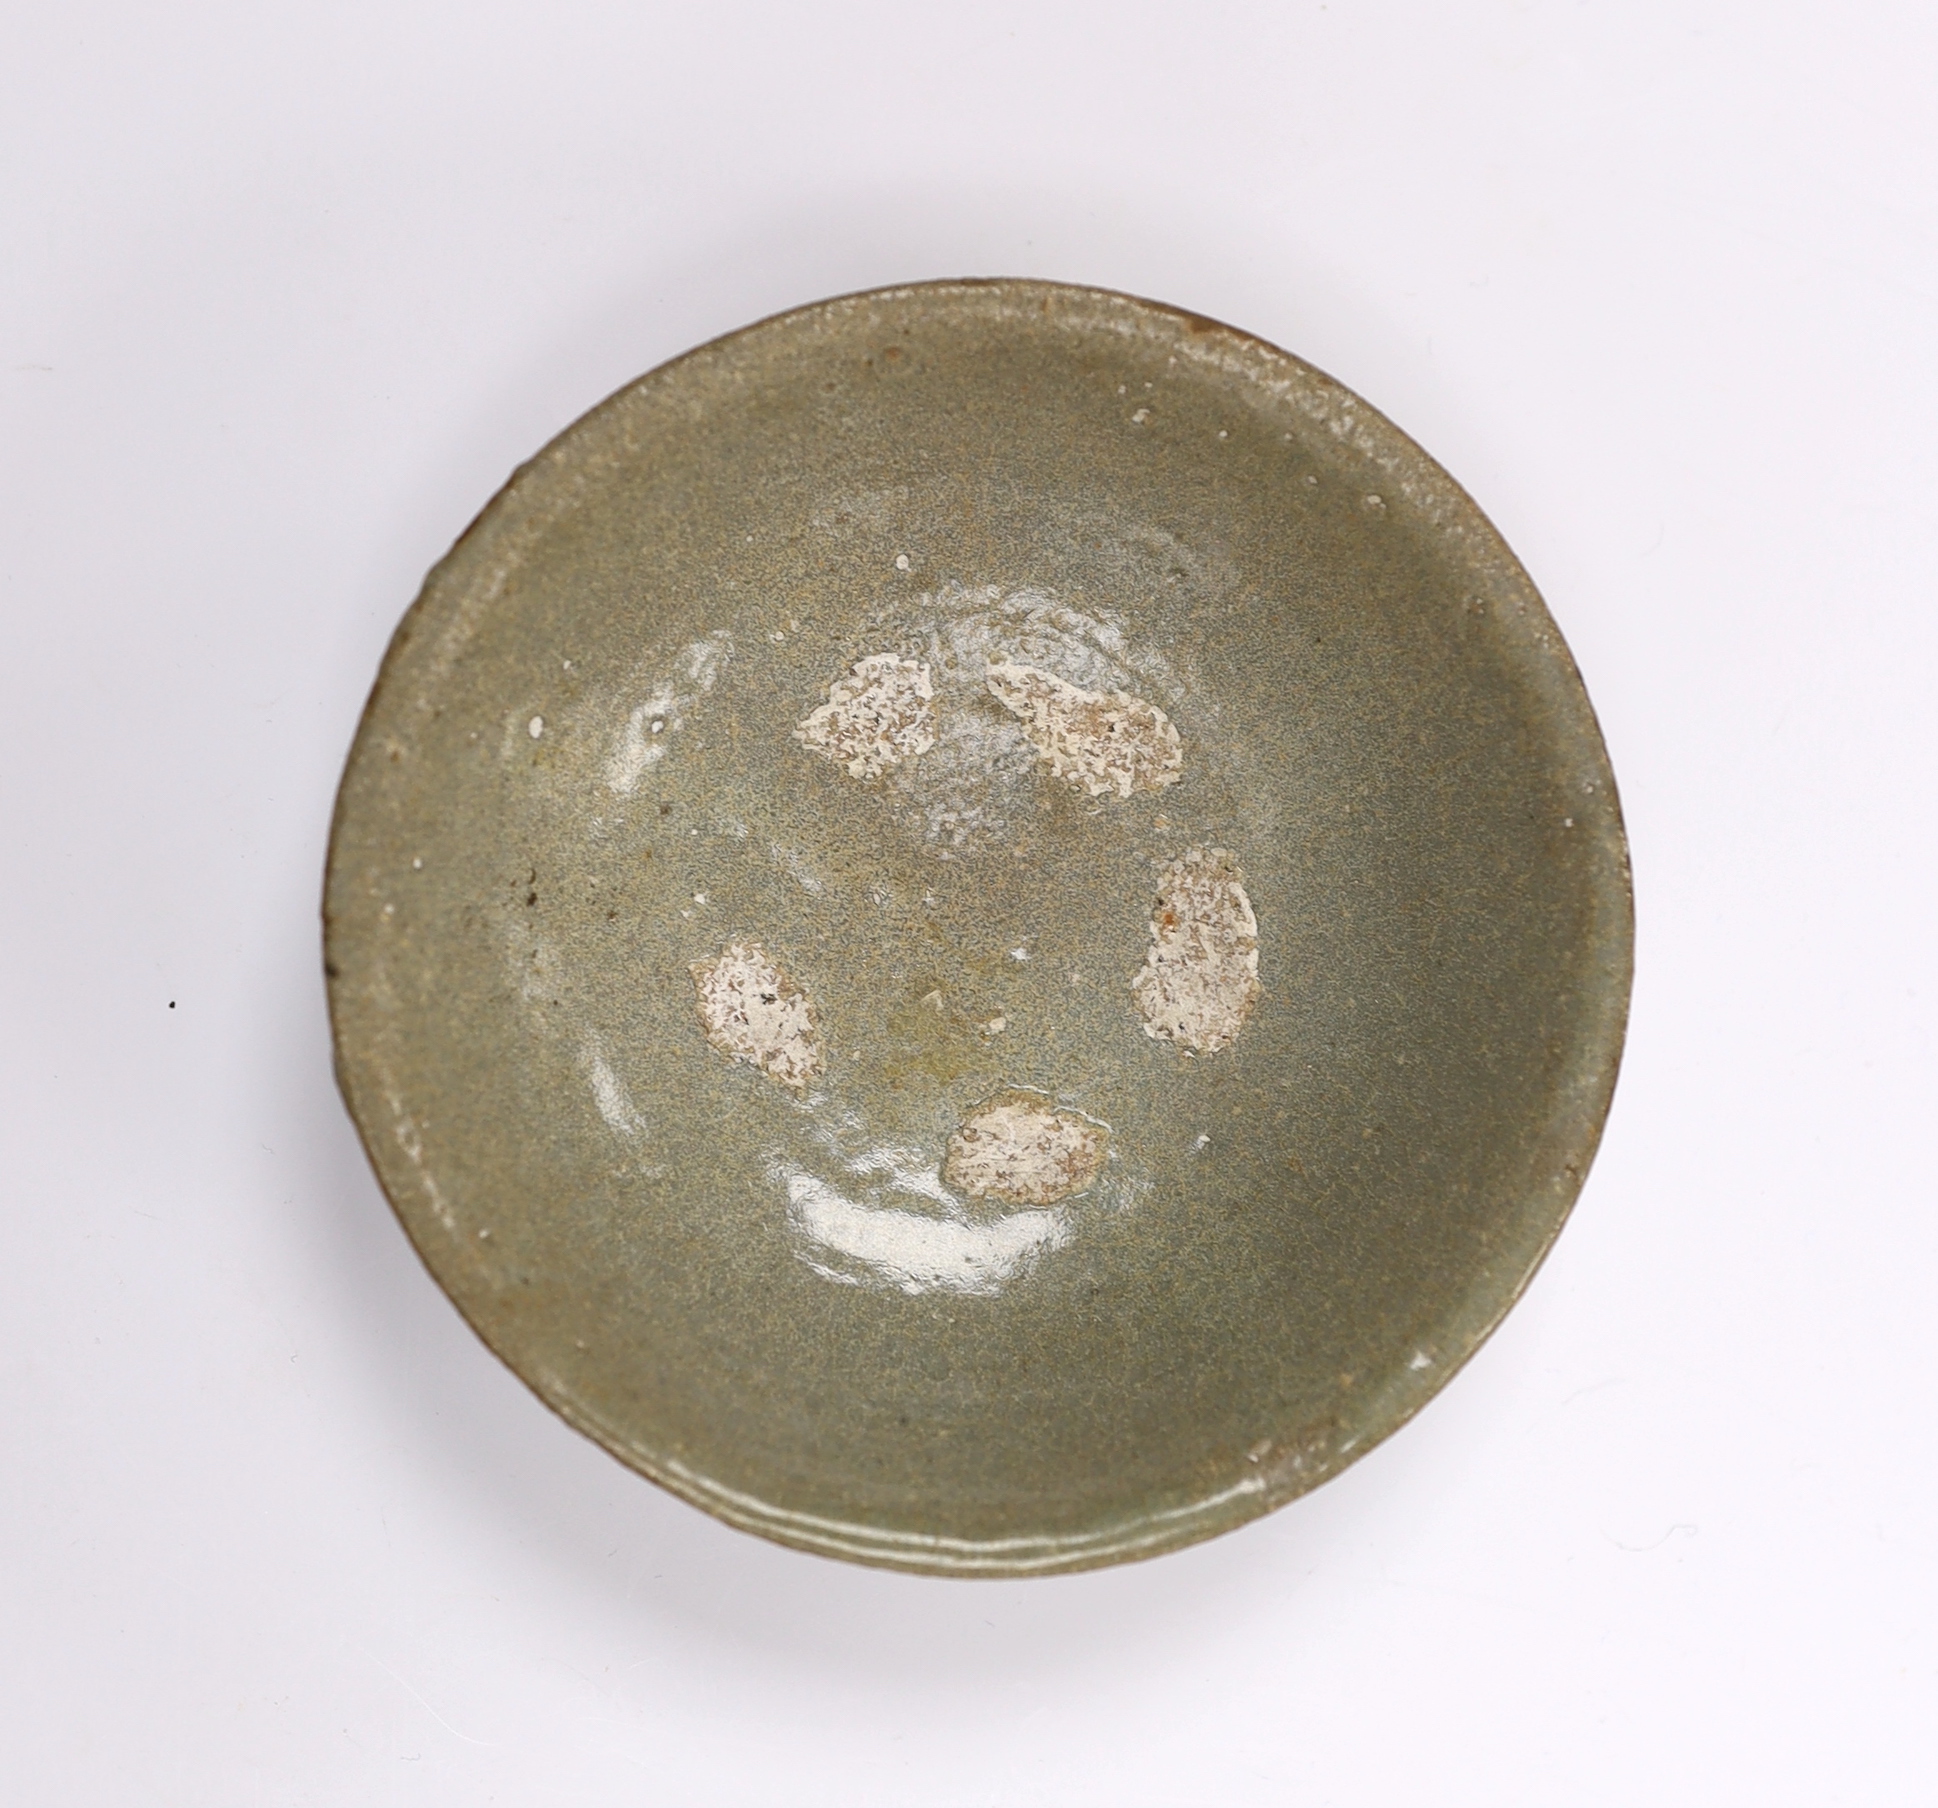 A Korean celadon dish, Goreyo dynasty, 11cm